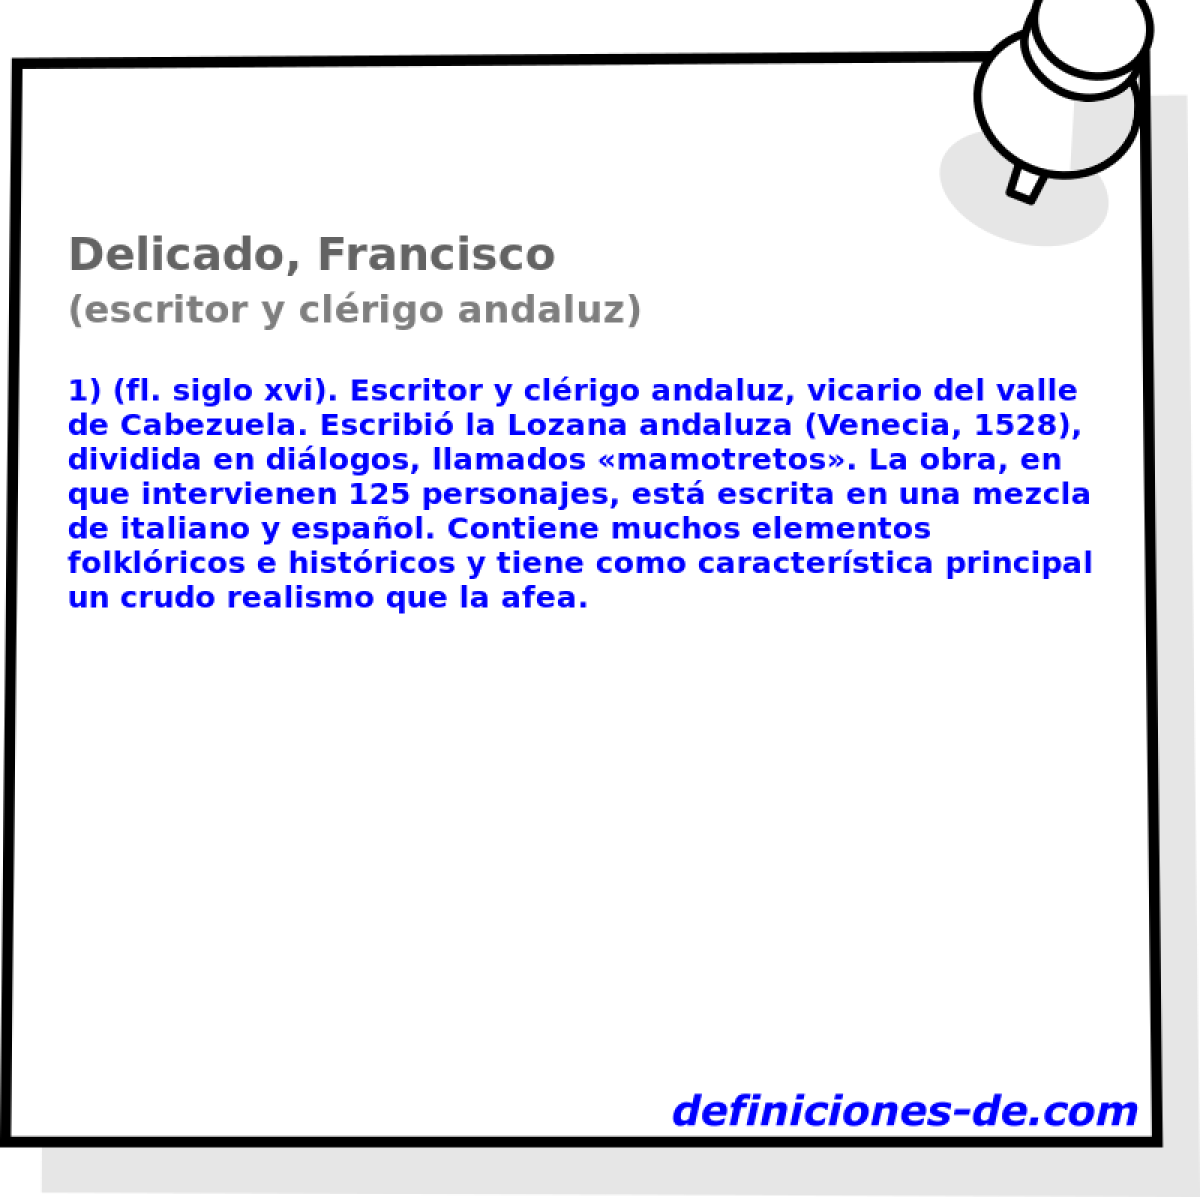 Delicado, Francisco (escritor y clrigo andaluz)